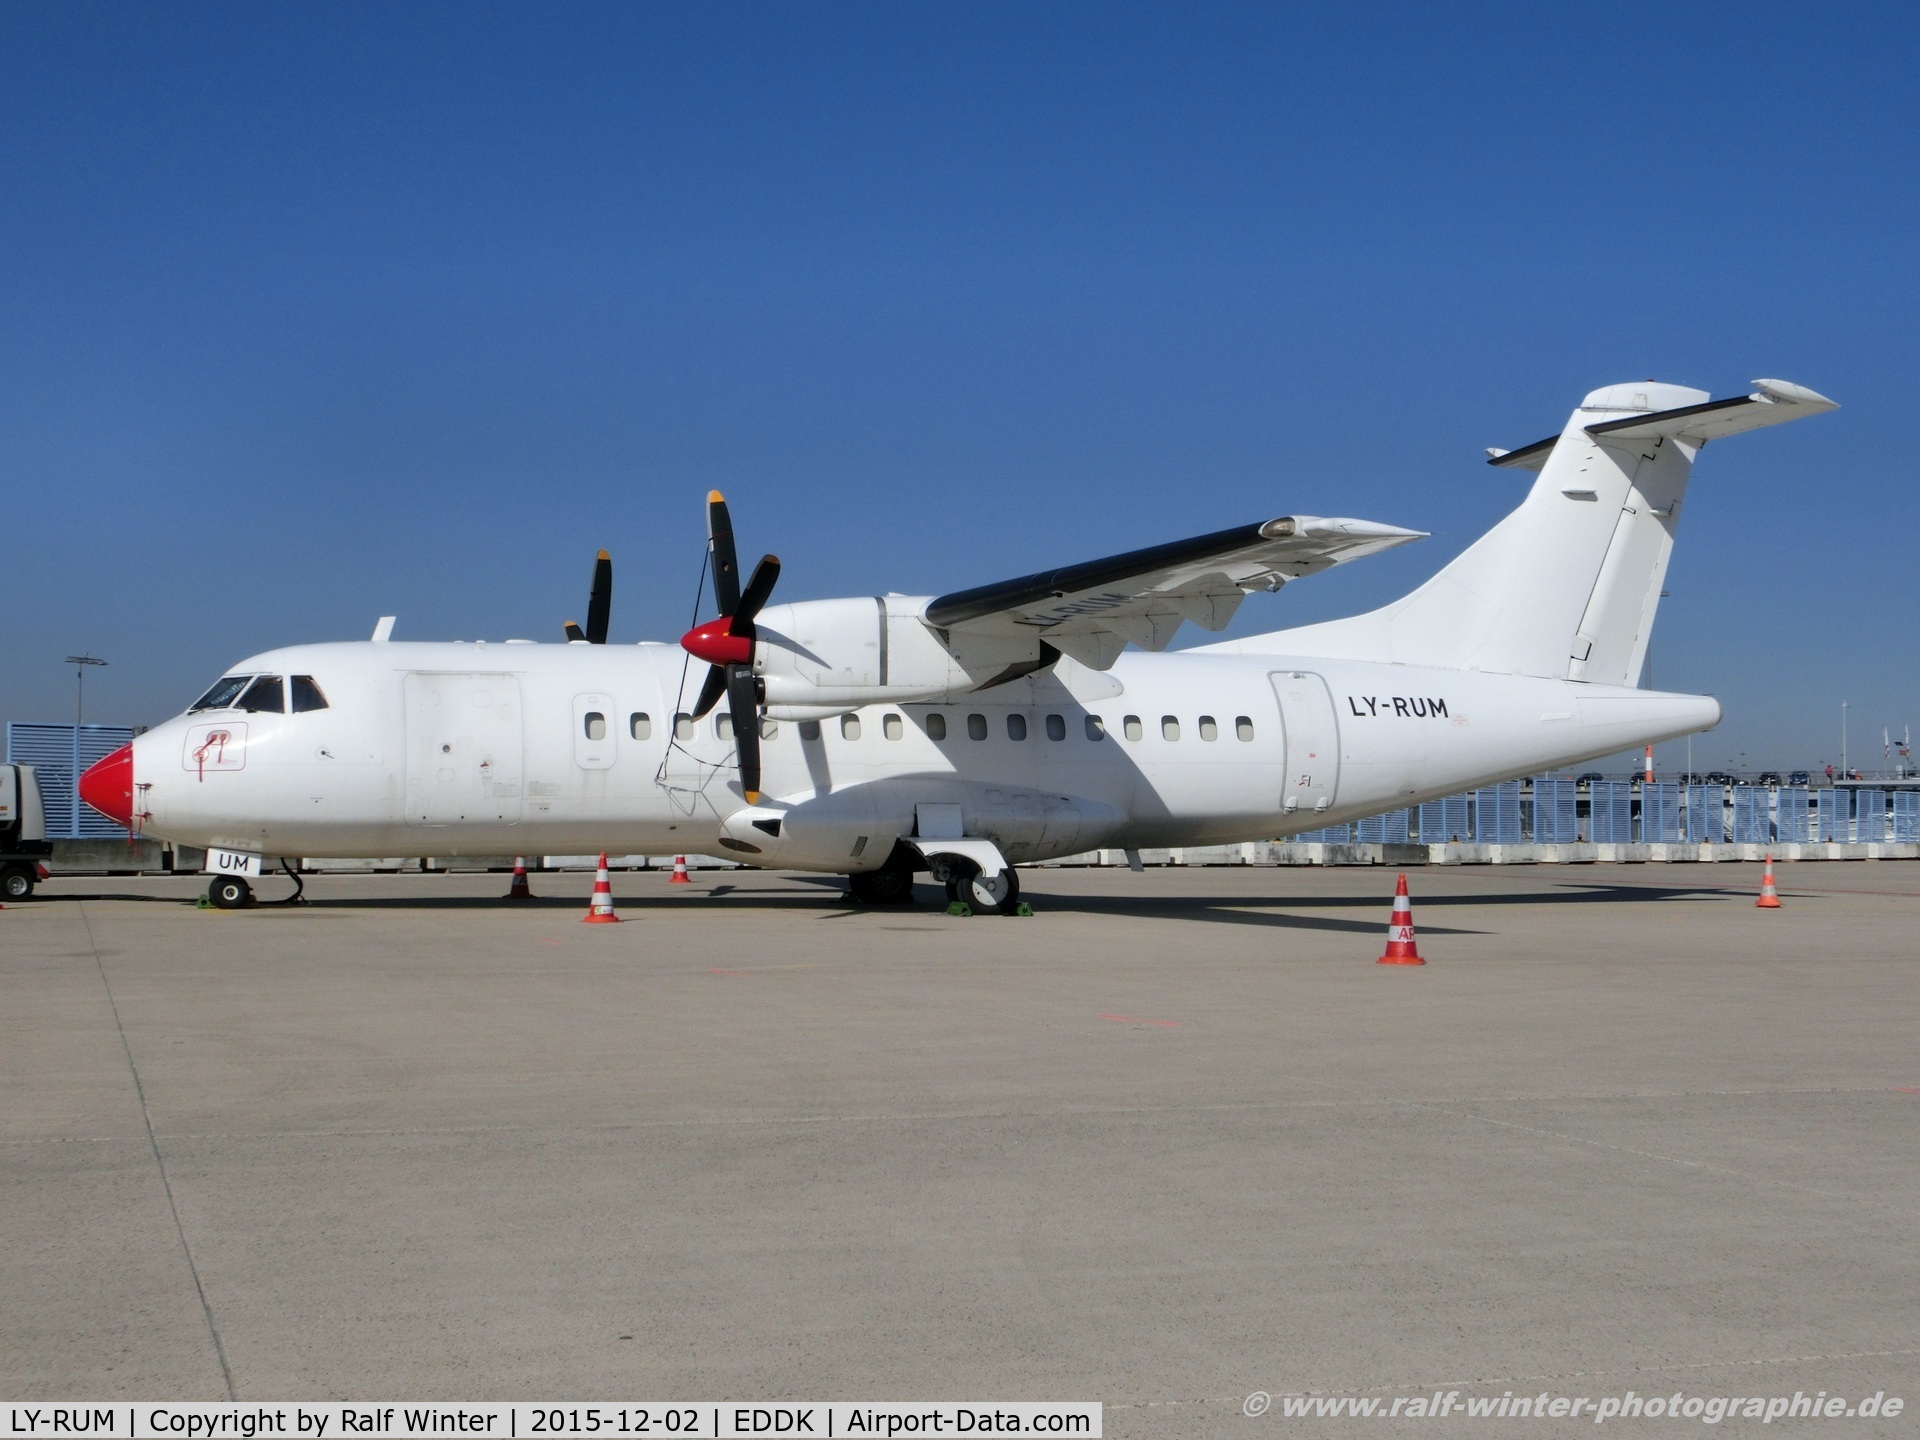 LY-RUM, 1986 ATR 42-300 C/N 010, ATR 42-300 - R6 DNU DOT LT - 010 - LY-RUM - 02.12.2015 - CGN